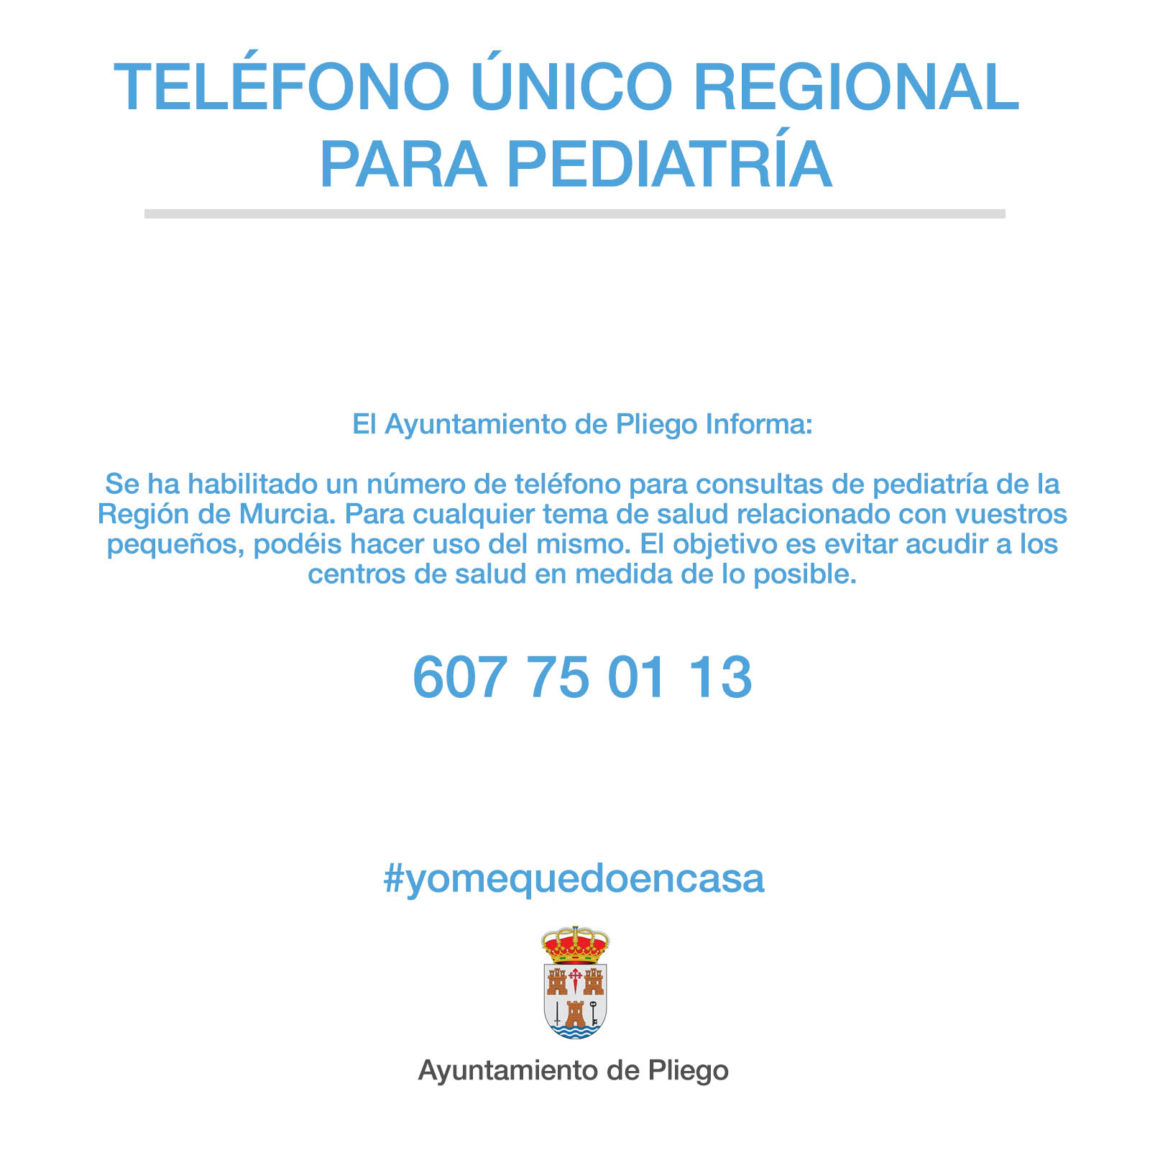 Teléfono único regional para pediatría